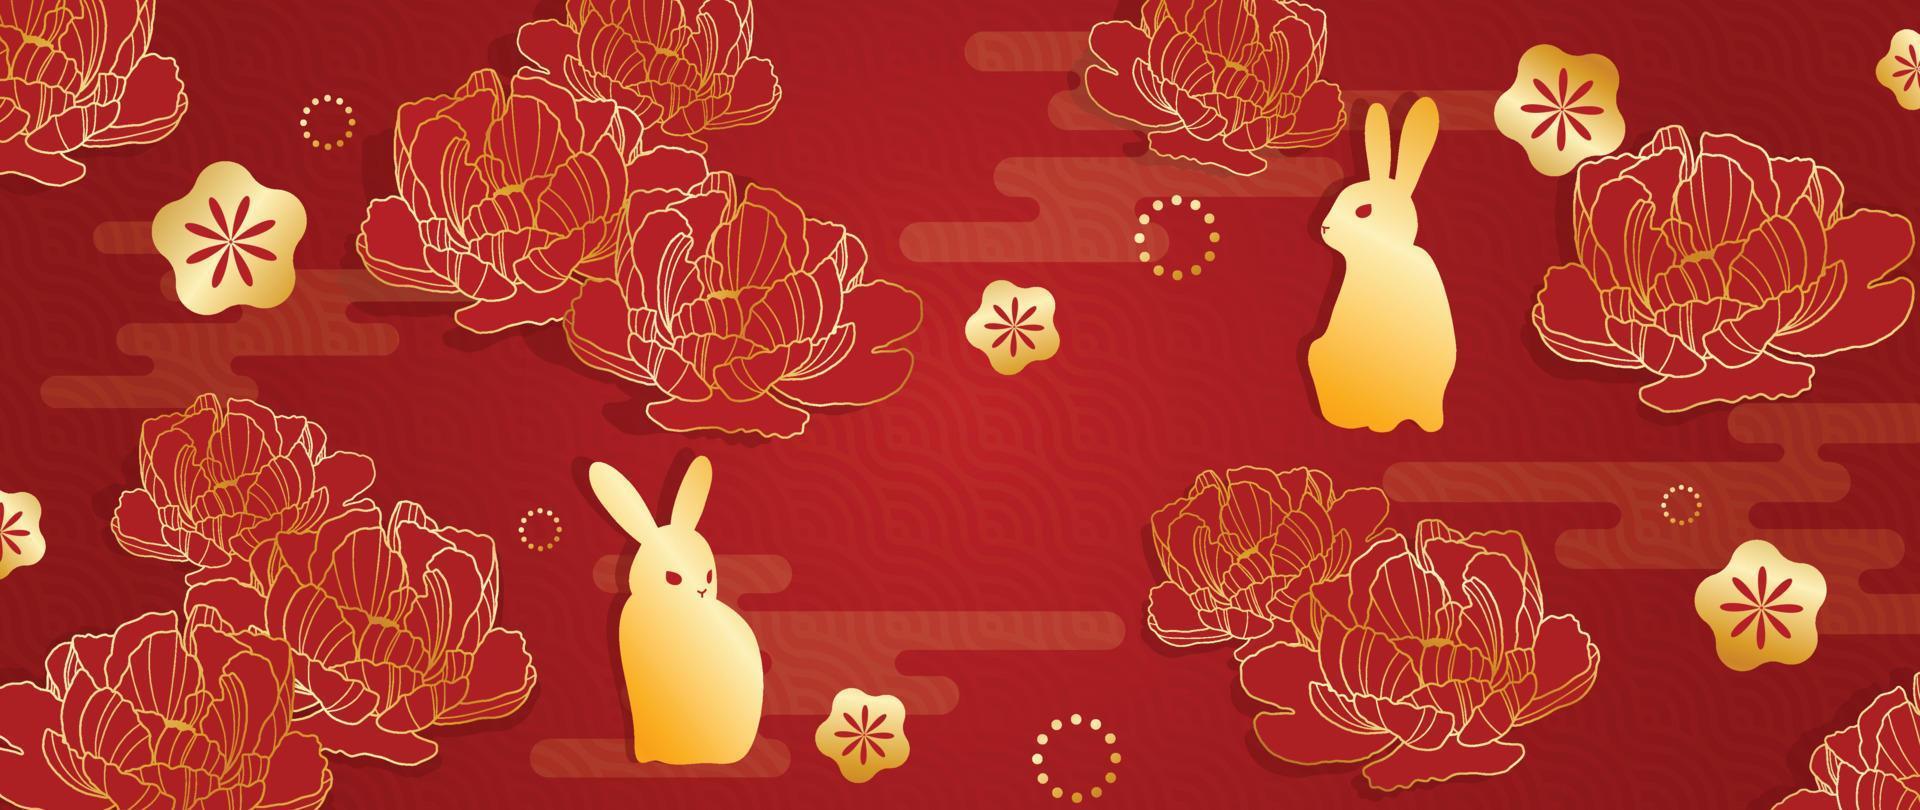 orientalischer japanischer und chinesischer luxusstilmusterhintergrundvektor. goldene neujahrskarte des kaninchens mit pfingstrosenblume auf chinesischem musterhintergrund. designillustration für tapete, karte, poster. vektor